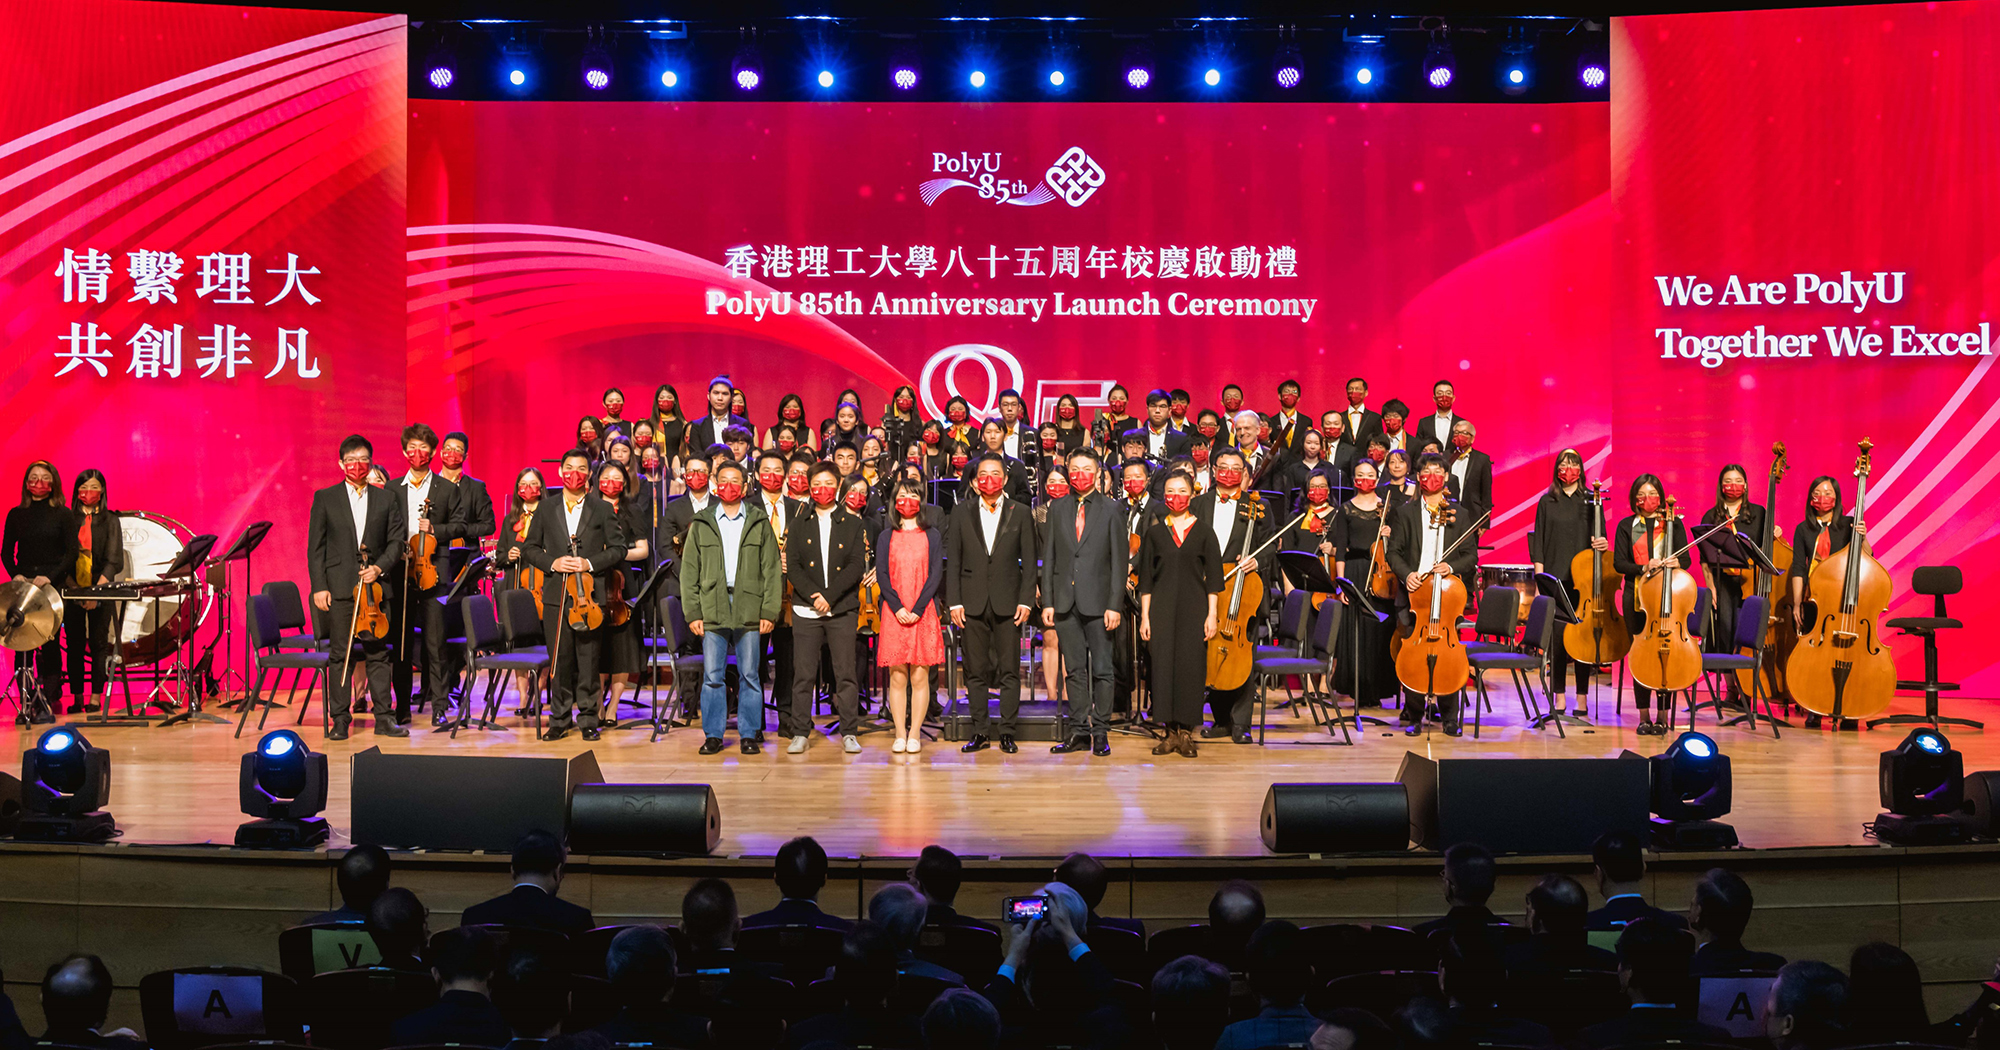 理大管弦樂團及理大合唱團在大學賽馬會綜藝館聯合演出八十五周年校慶主題曲。